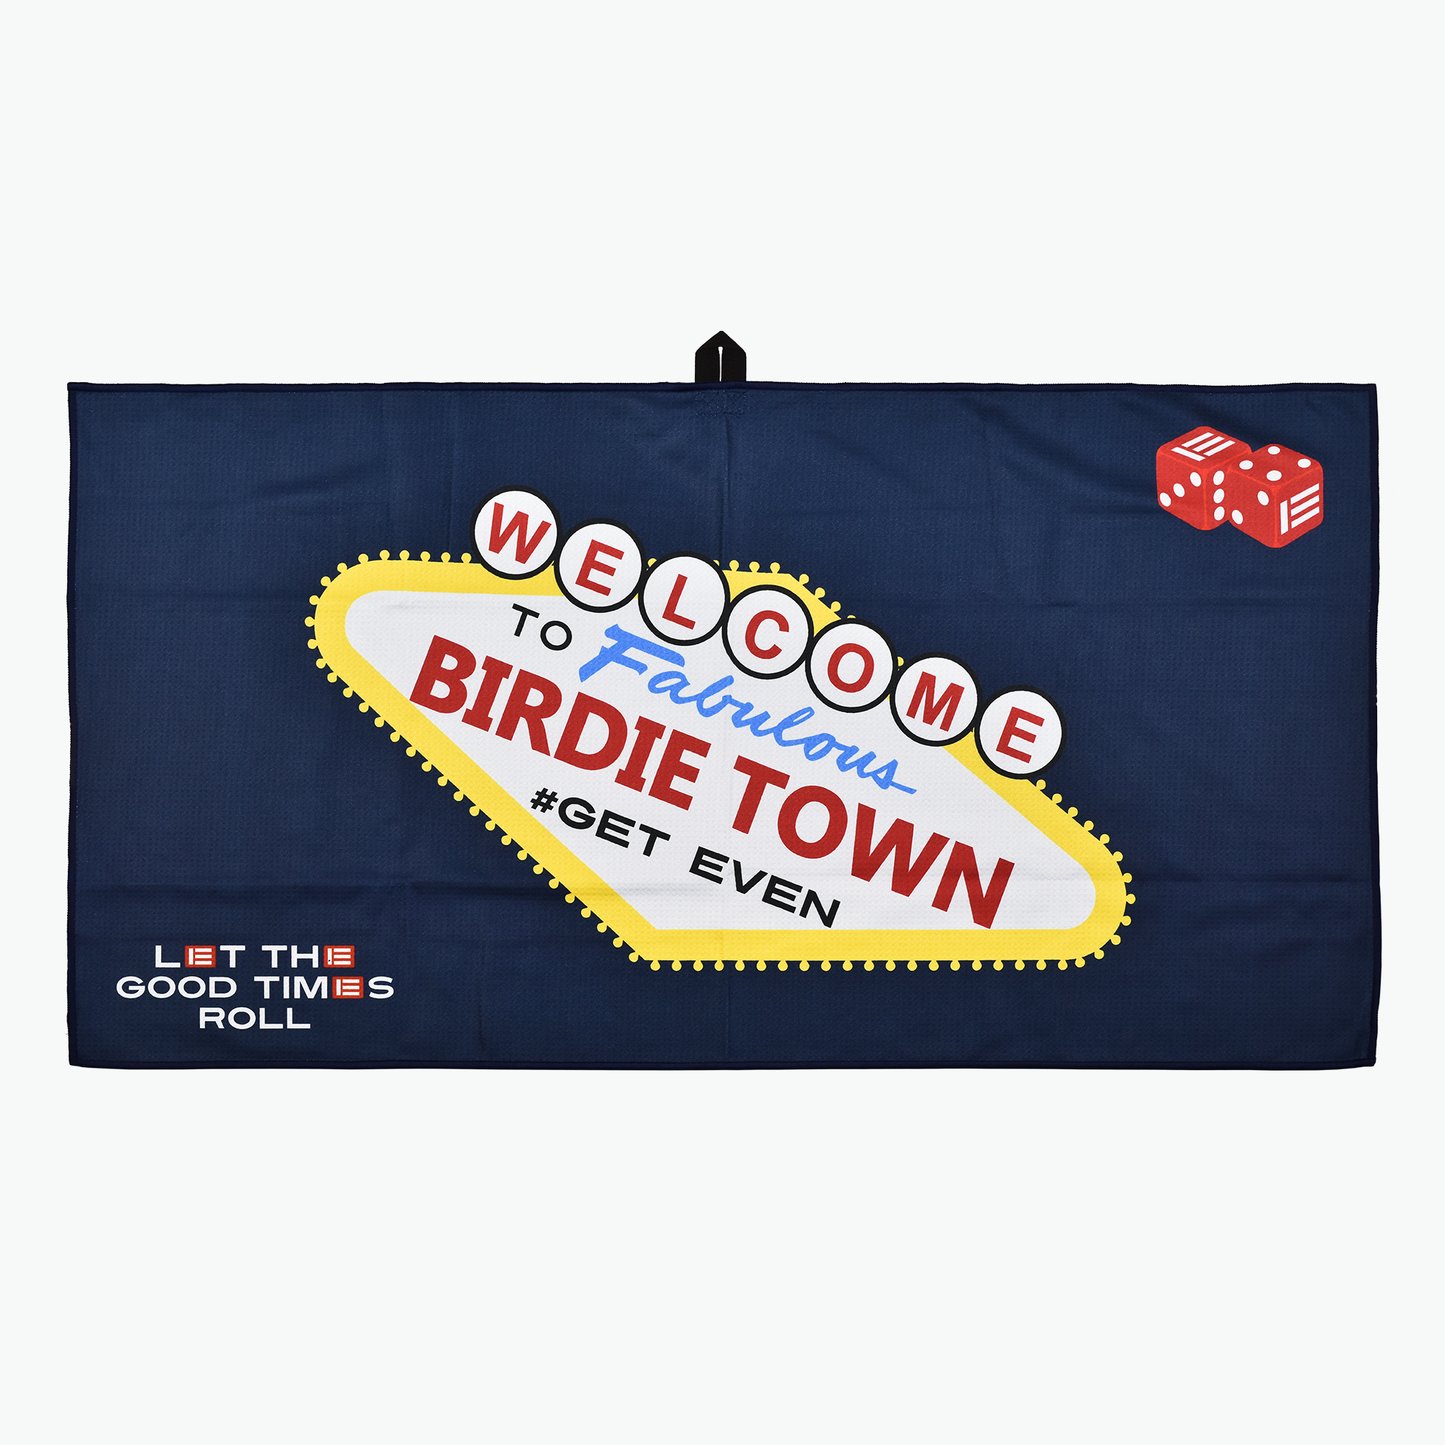 Birdie Town – Towel